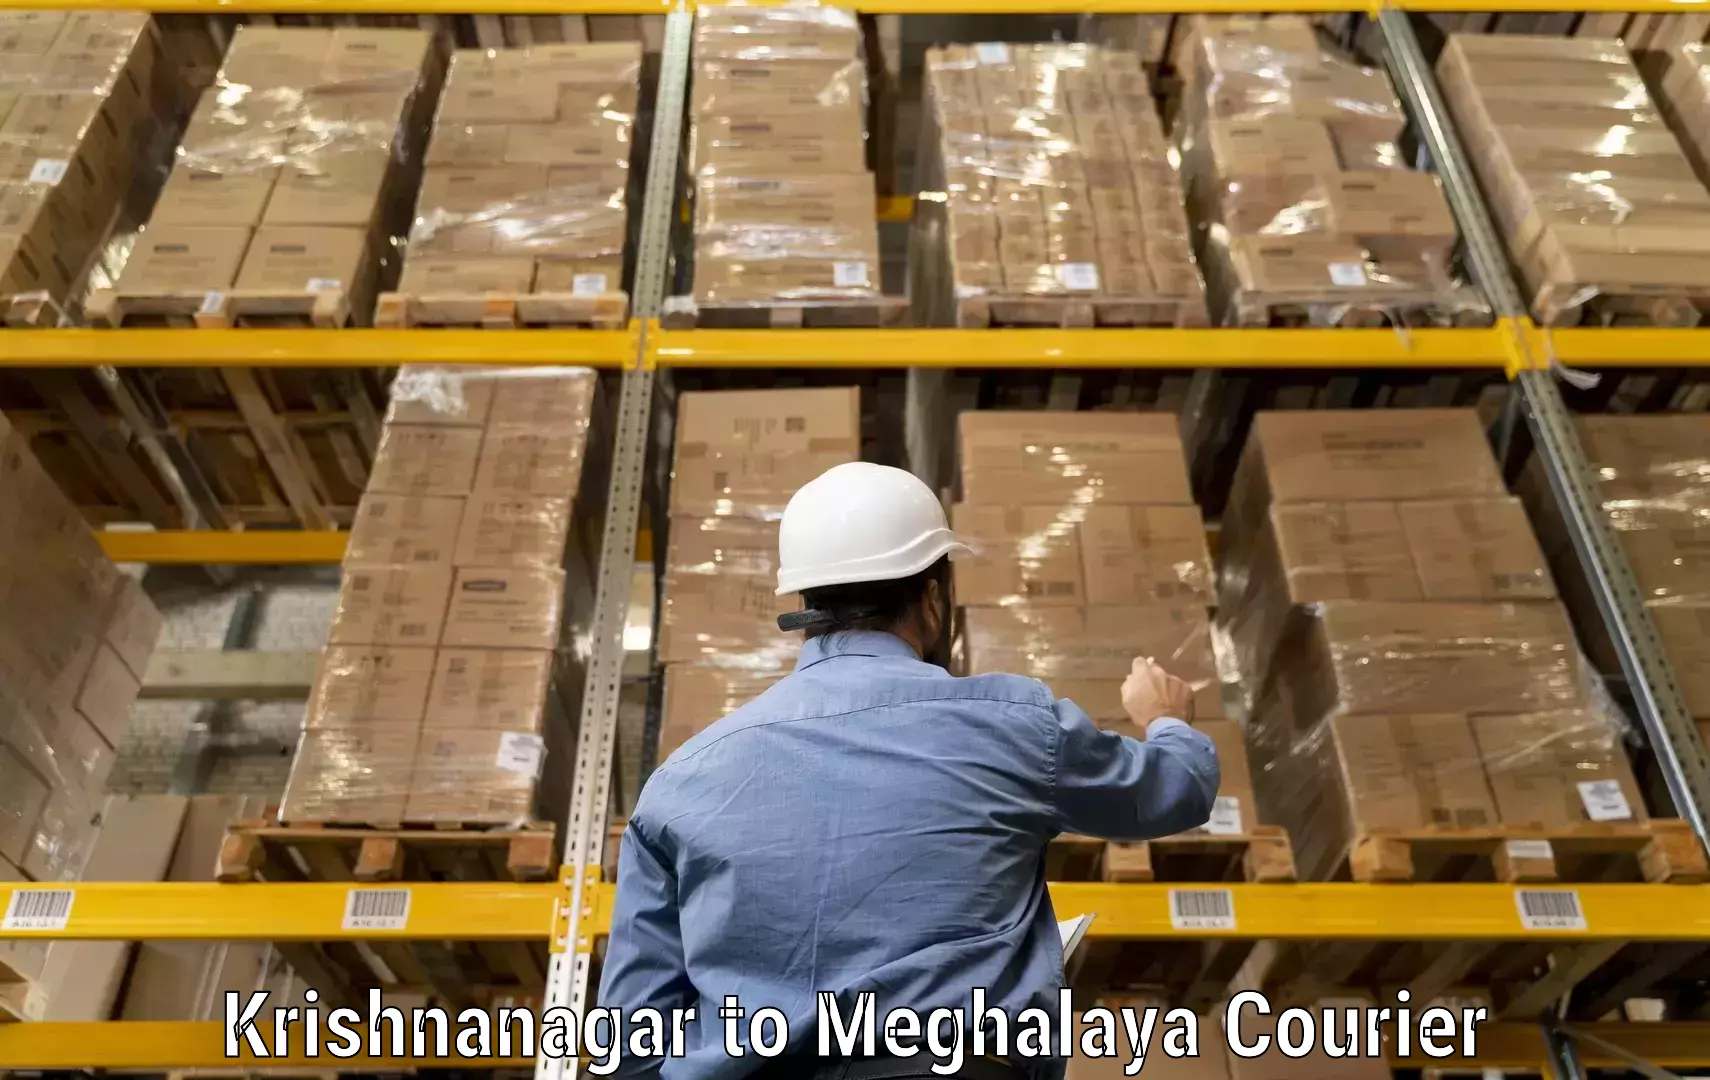 Courier service booking Krishnanagar to Shillong